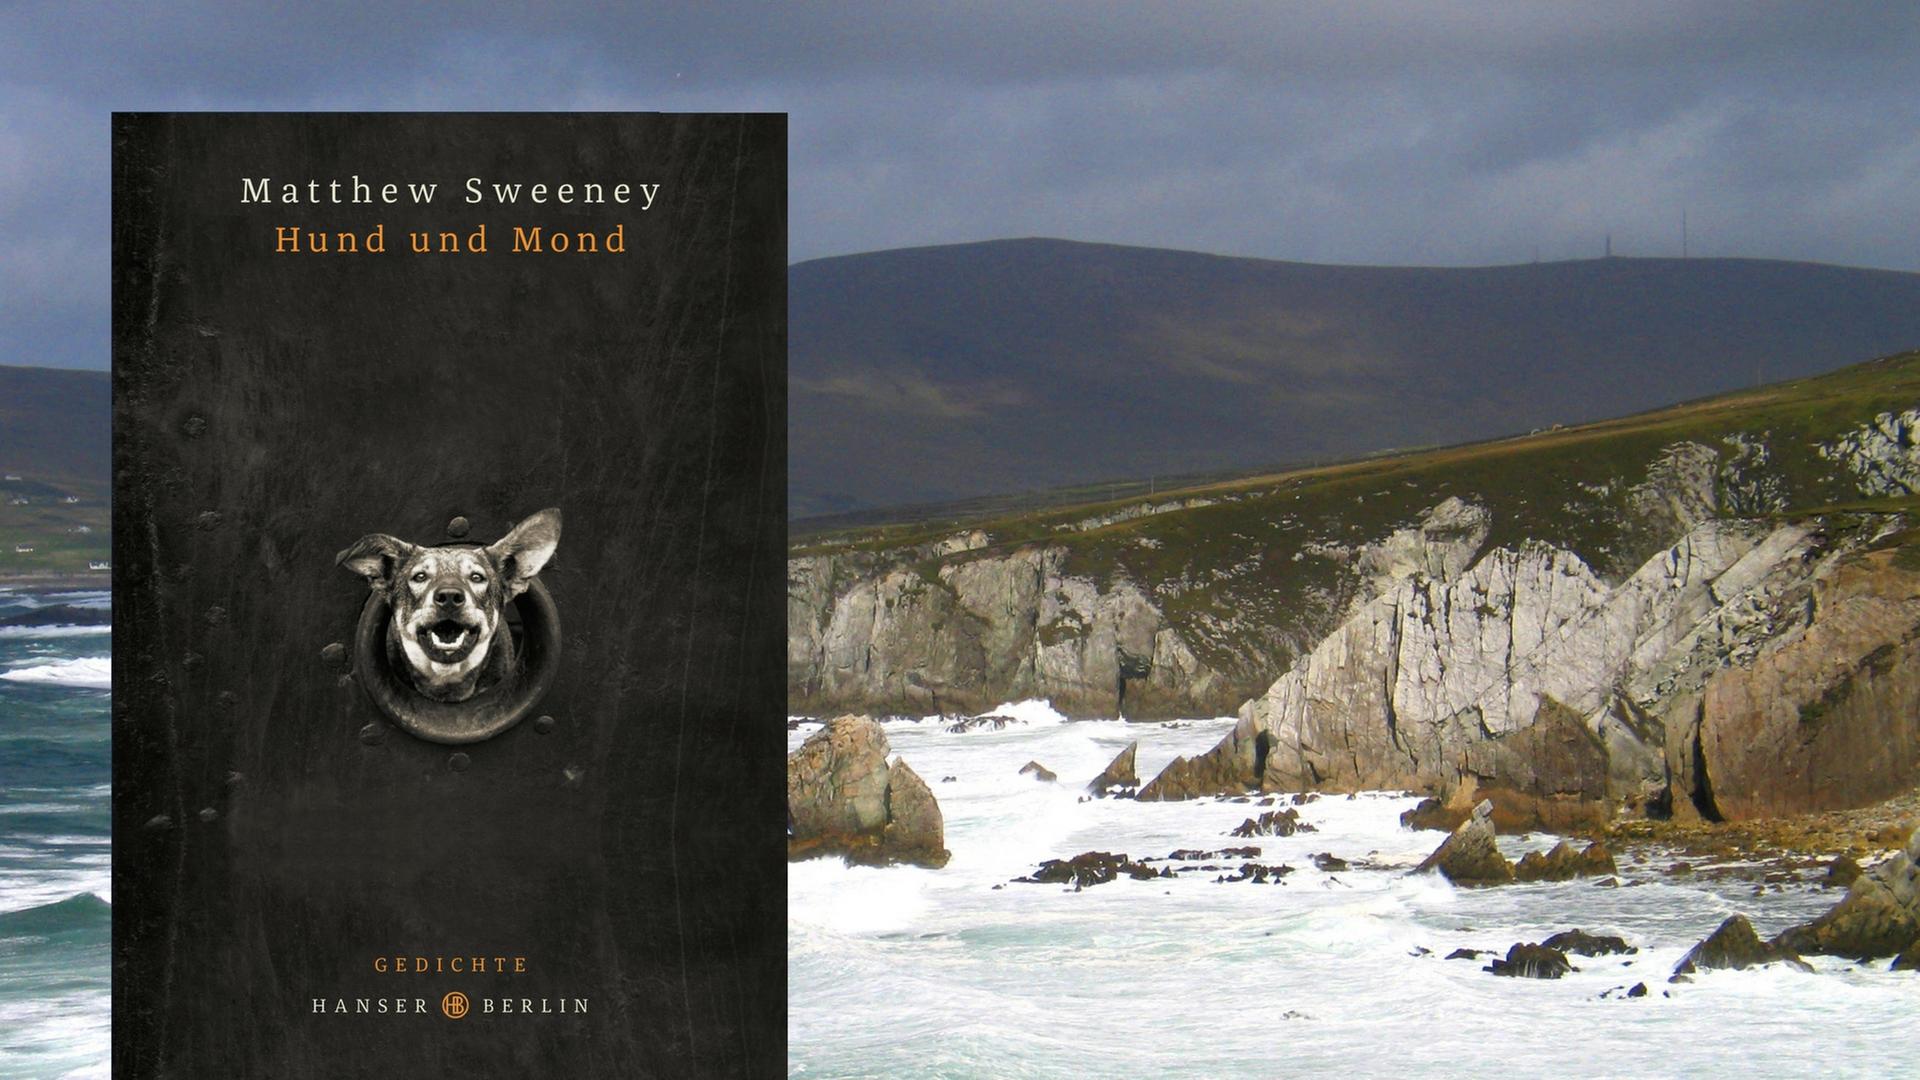 Cover des Gedichtbands "Hund und Mond" von Matthew Sweeney, im Hintergrund ist eine irische Küste zu sehen.